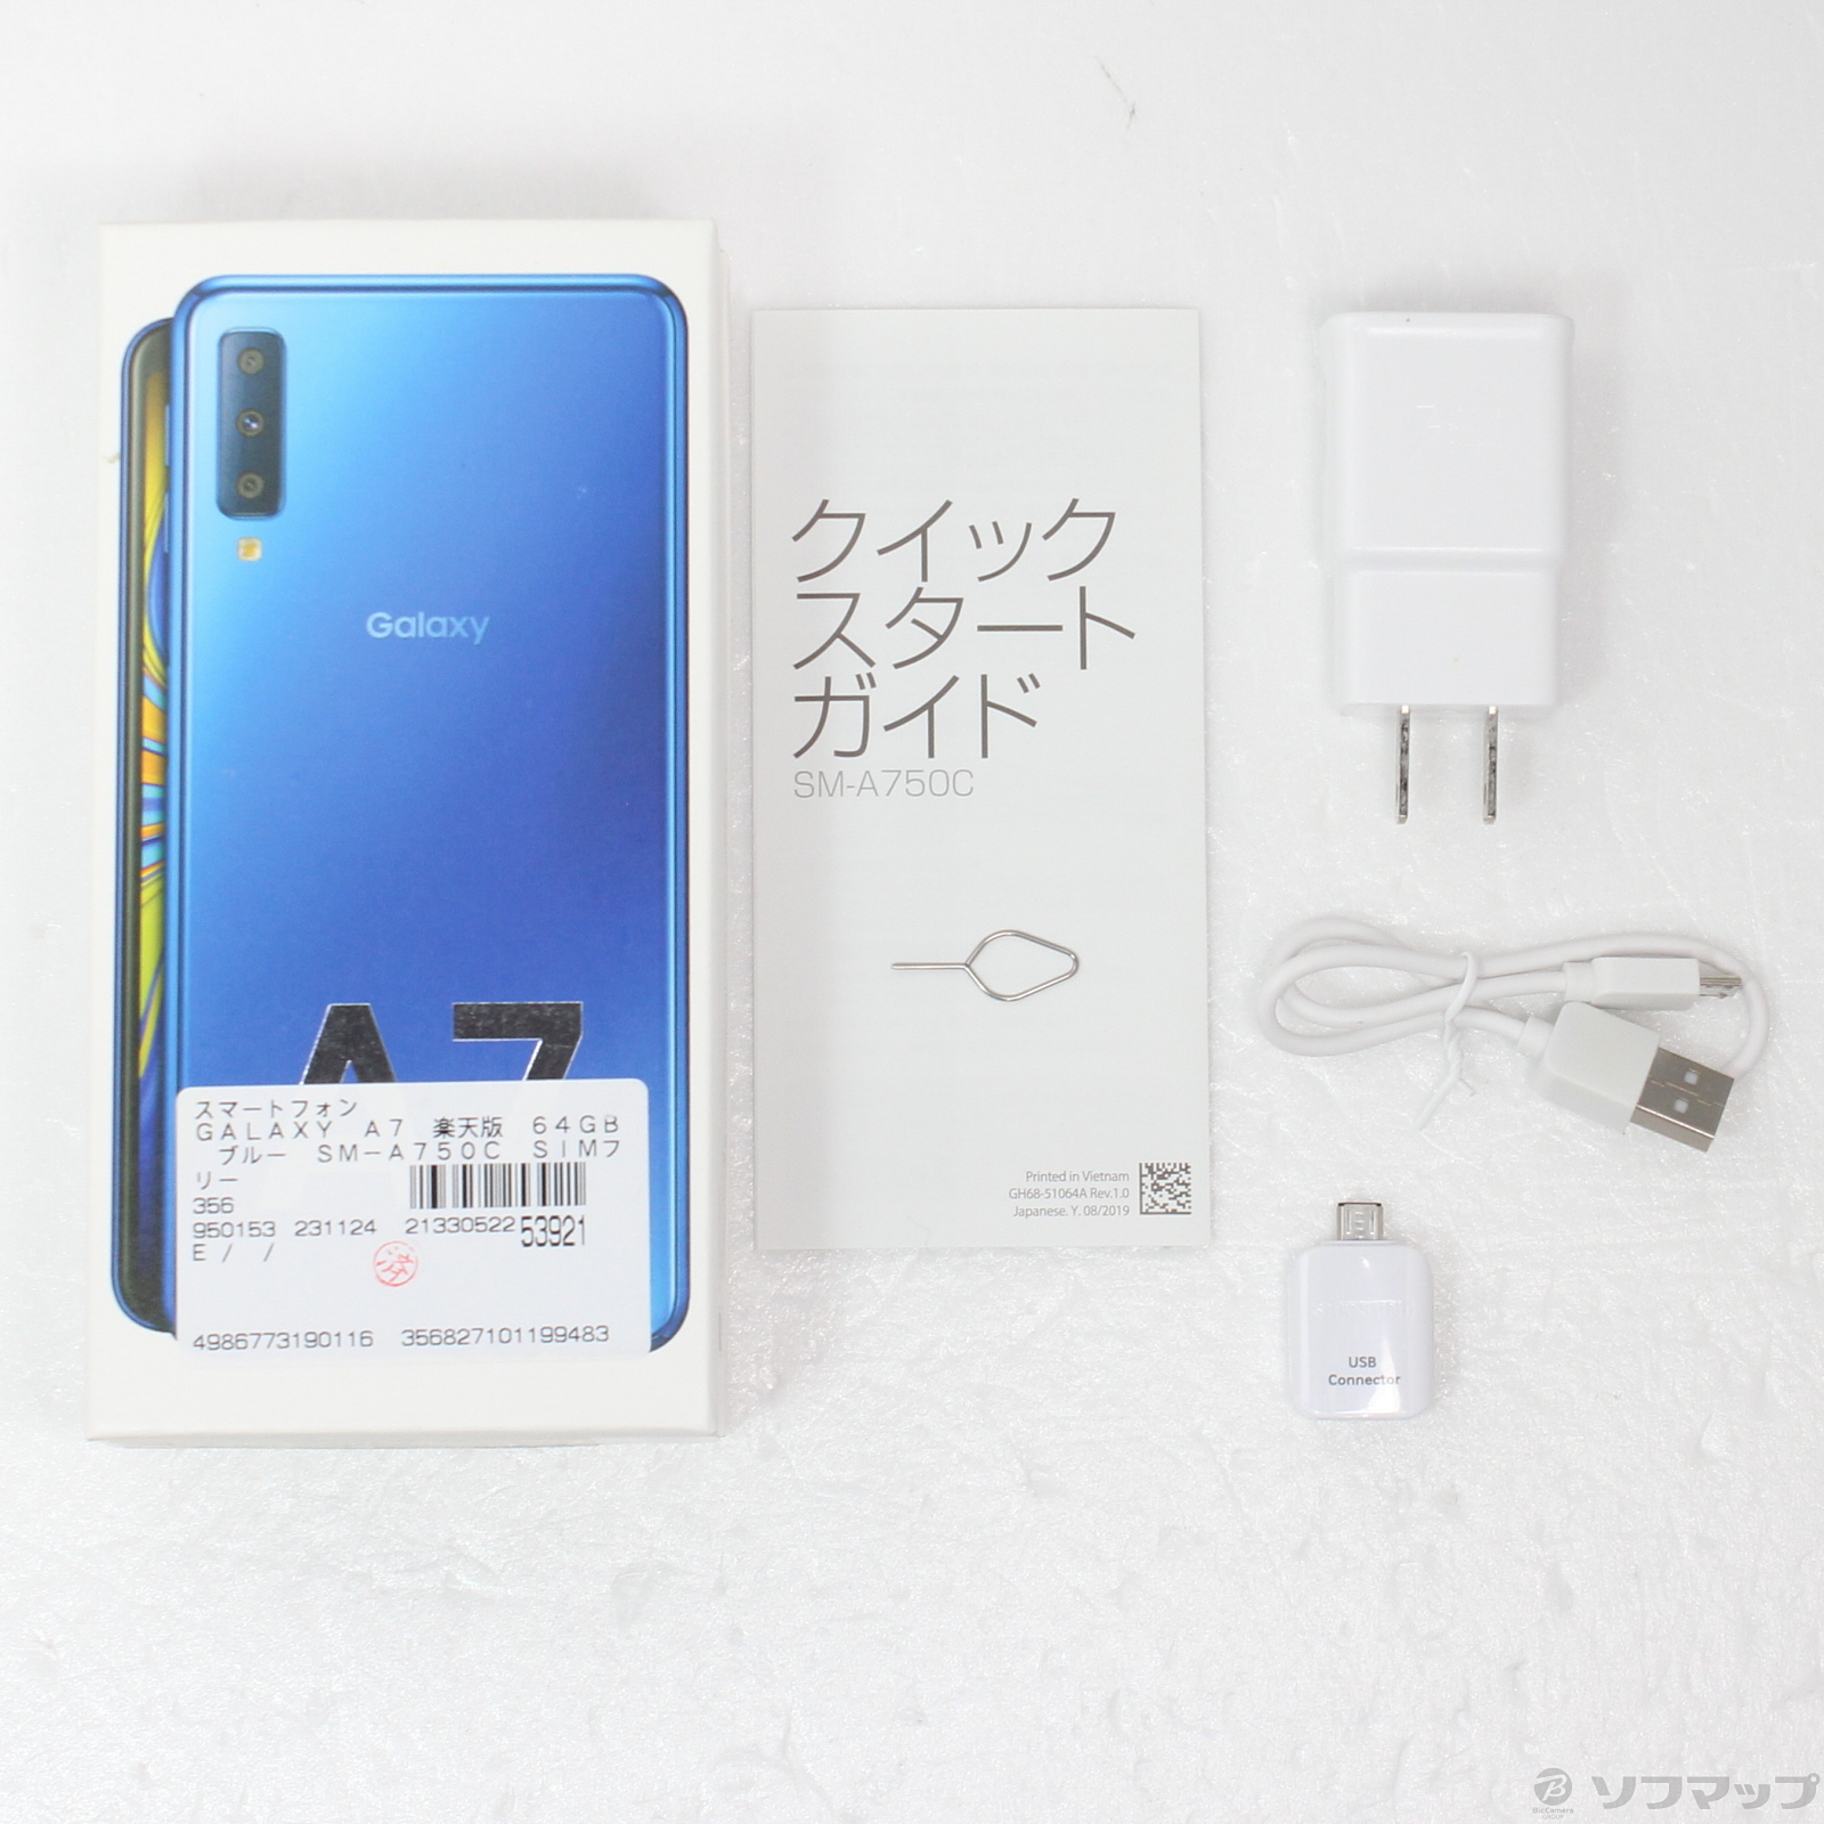 スマホGalaxy A7 ブルー 64GB SIMフリー - スマートフォン本体